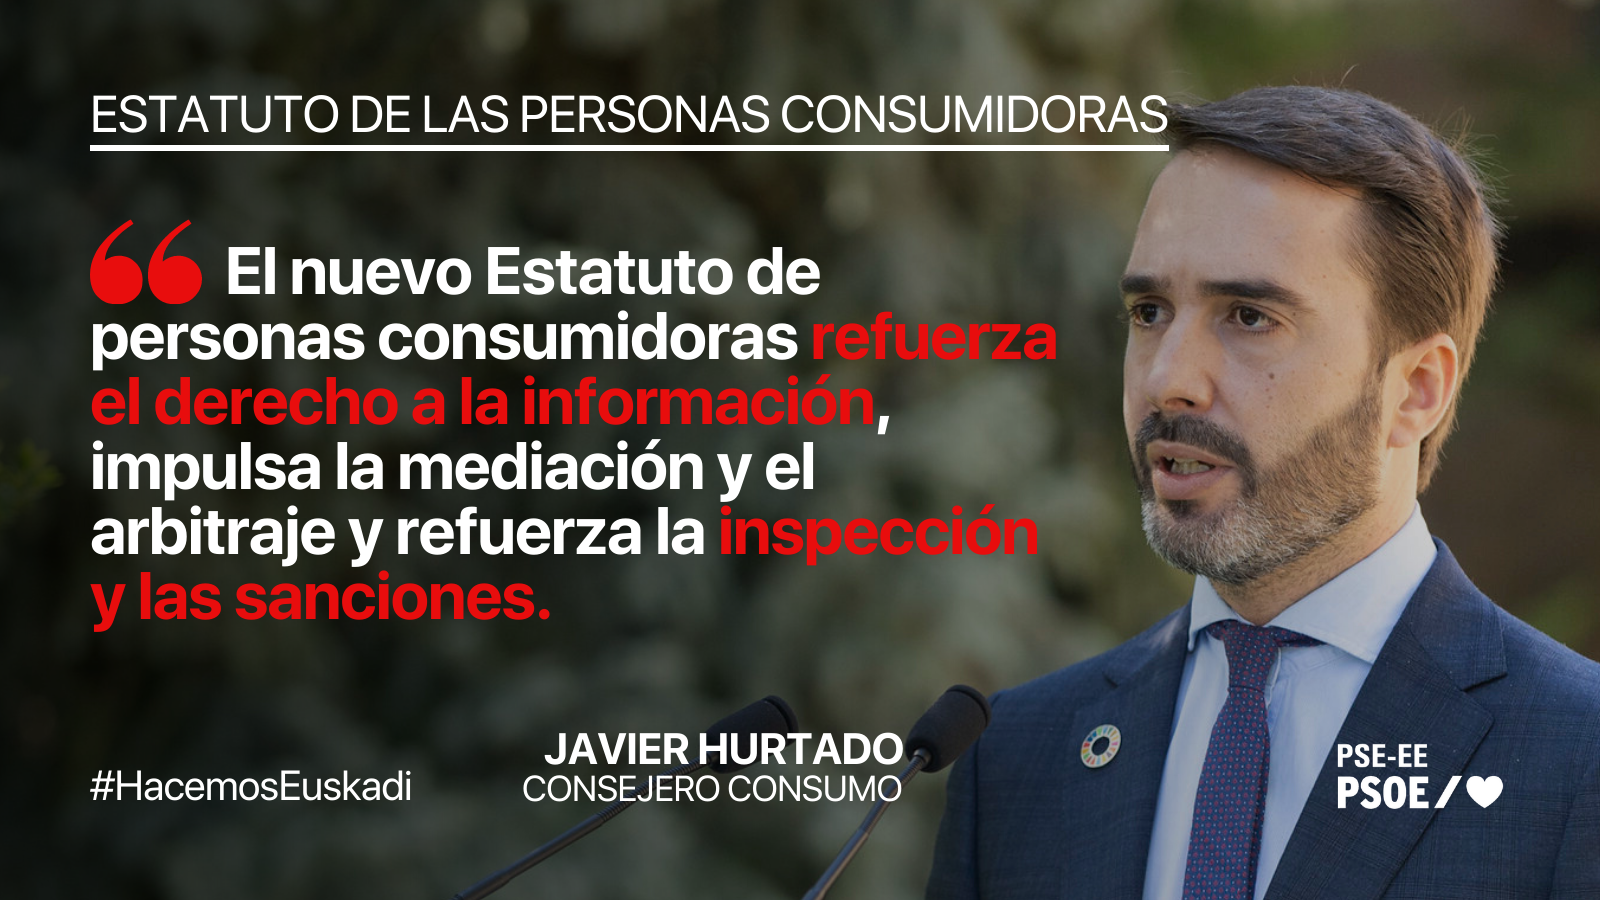 La protección de las personas vulnerables será uno de los ejes centrales del Estatuto de las personas consumidoras y usuarias de Euskadi impulsado por el consejero, Javier Hurtado